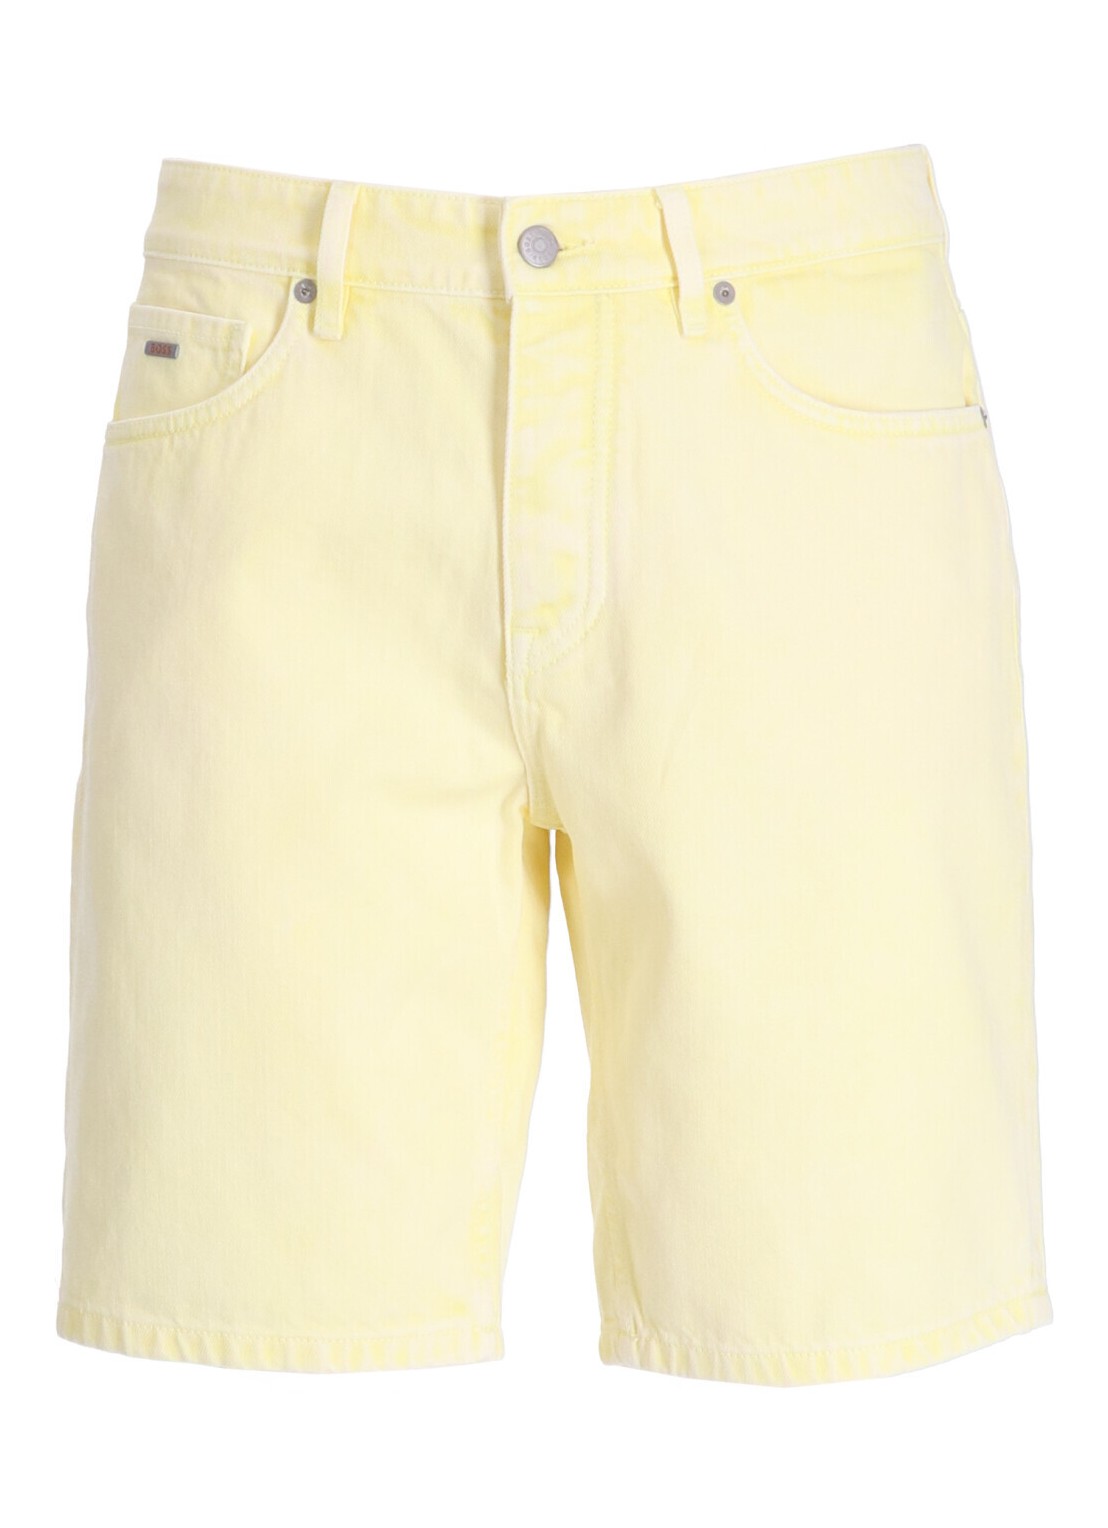 Pantalon corto boss short pant mananderson shorts bc - 50514494 737 talla 34
 